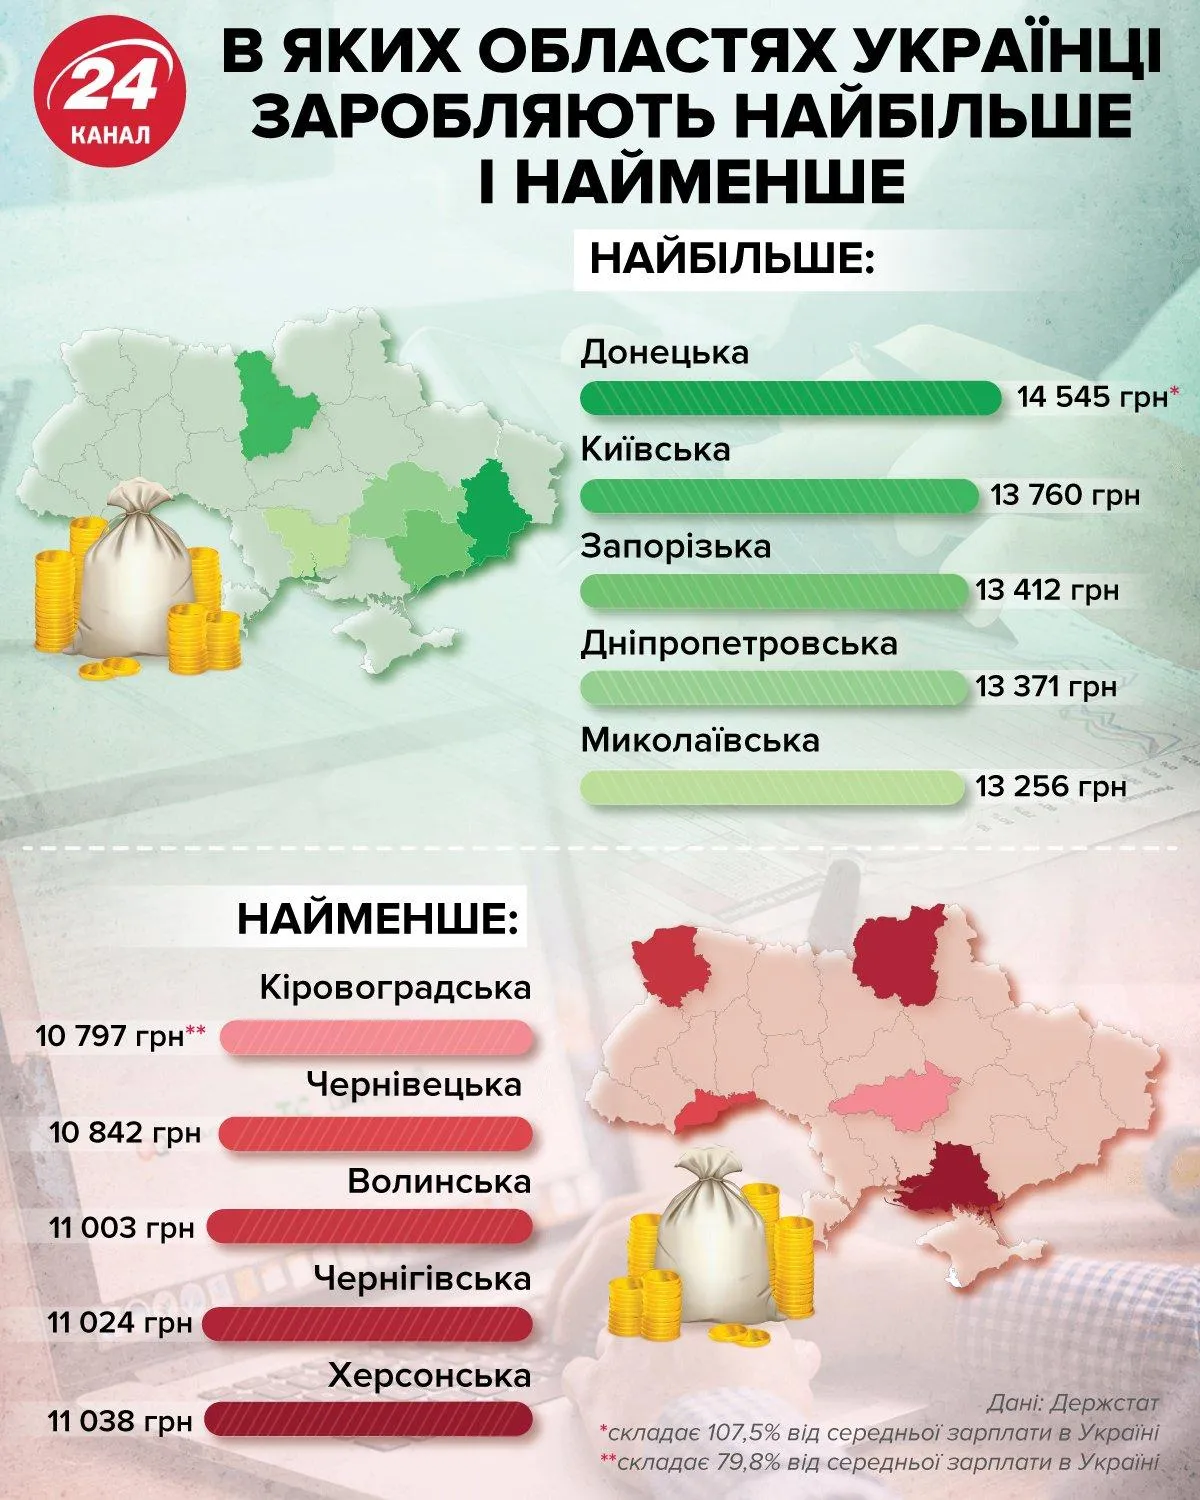 Найвищі та найнижчі зарплати в Україні